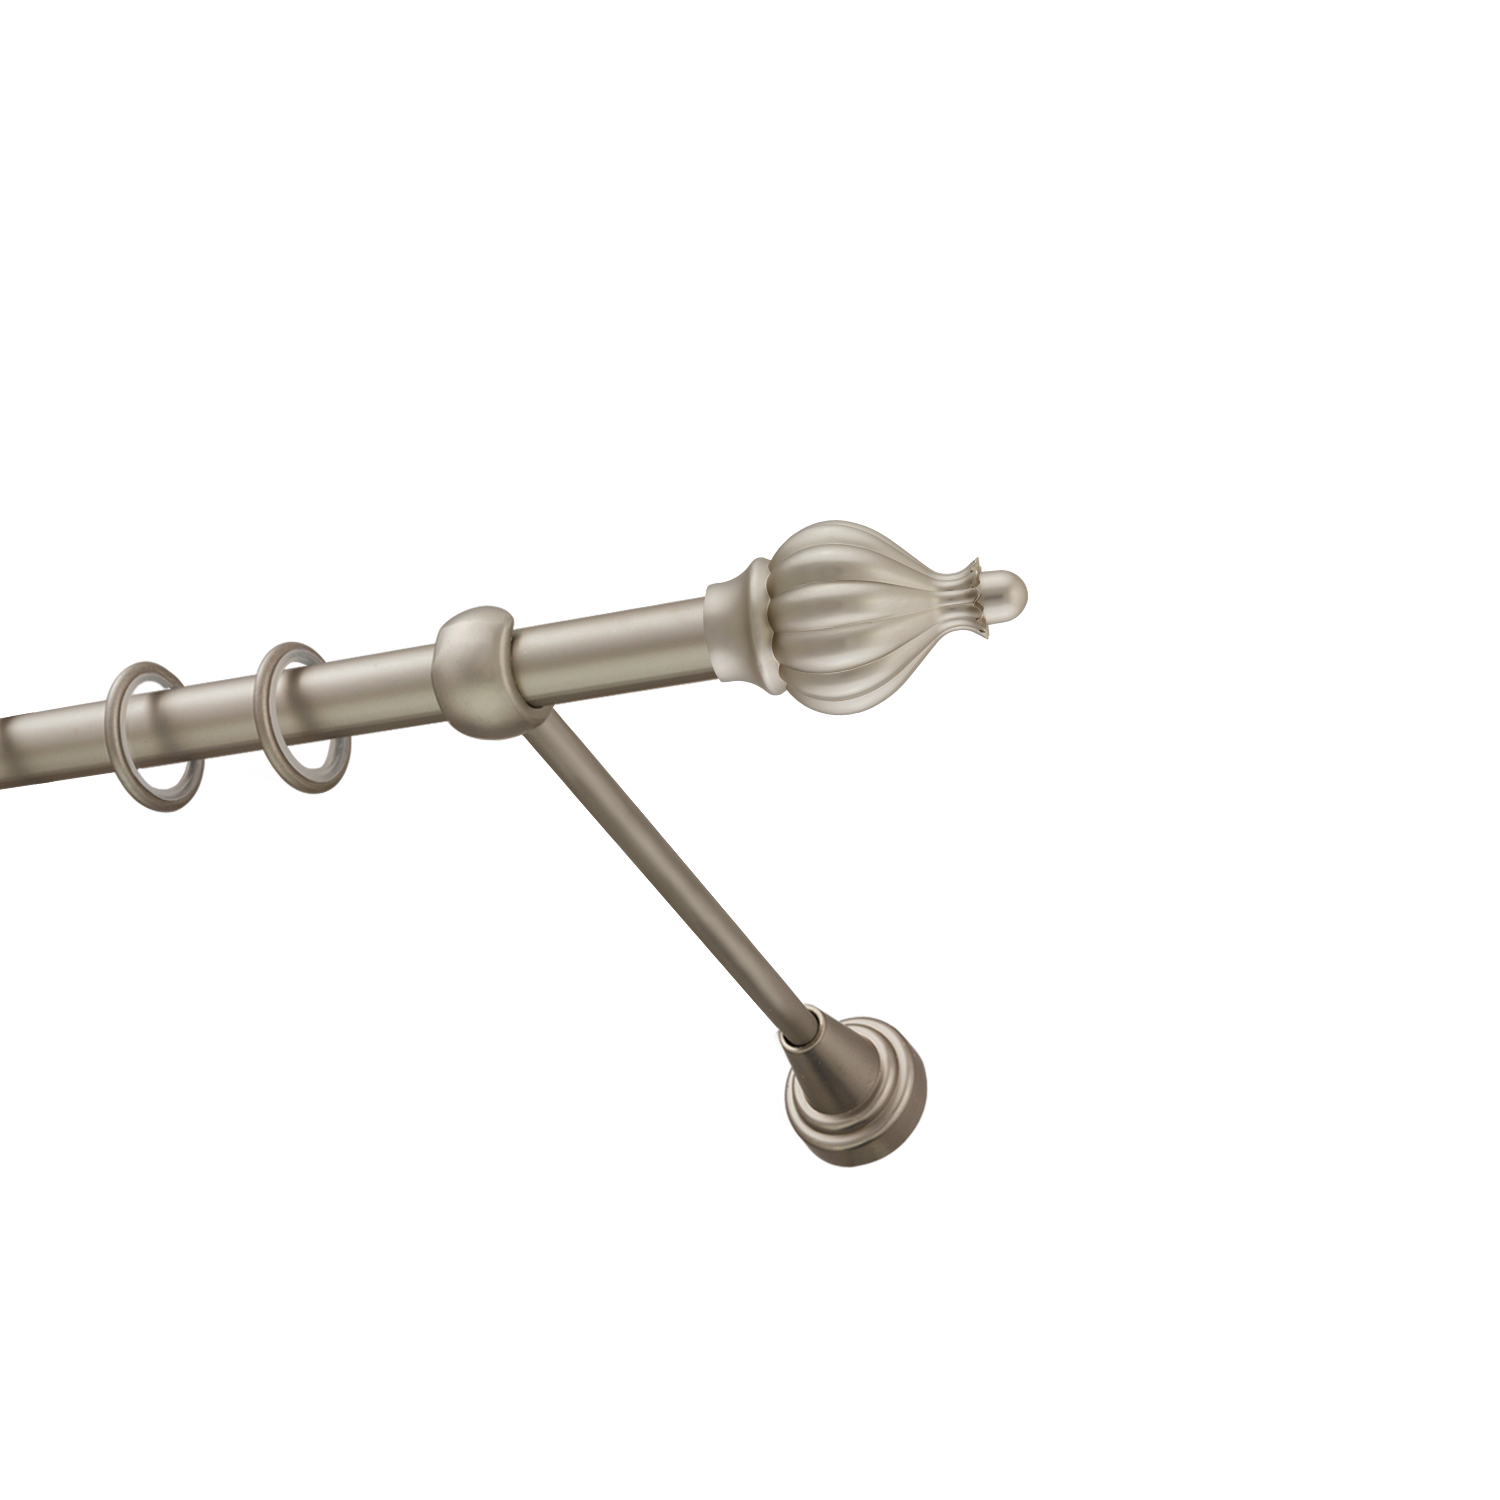 Металлический карниз для штор Афродита, однорядный 16 мм, сталь, гладкая штанга, длина 180 см - фото Wikidecor.ru